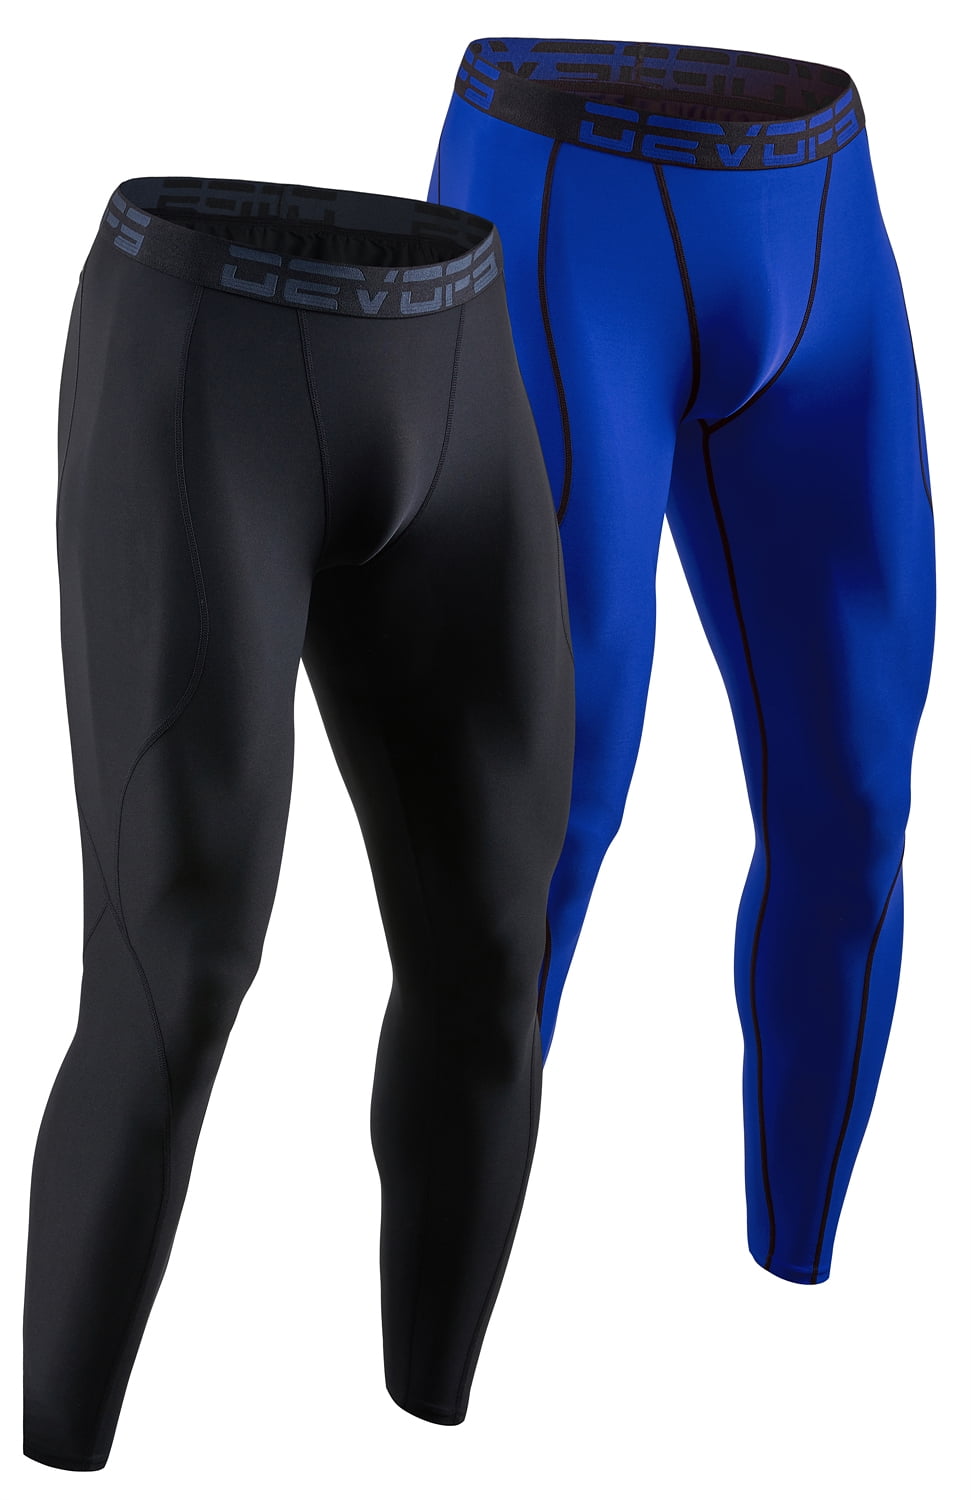 DEVOPS 2 Pack Men's Compression Pants Athletic Leggings (Large, Black/Blue)